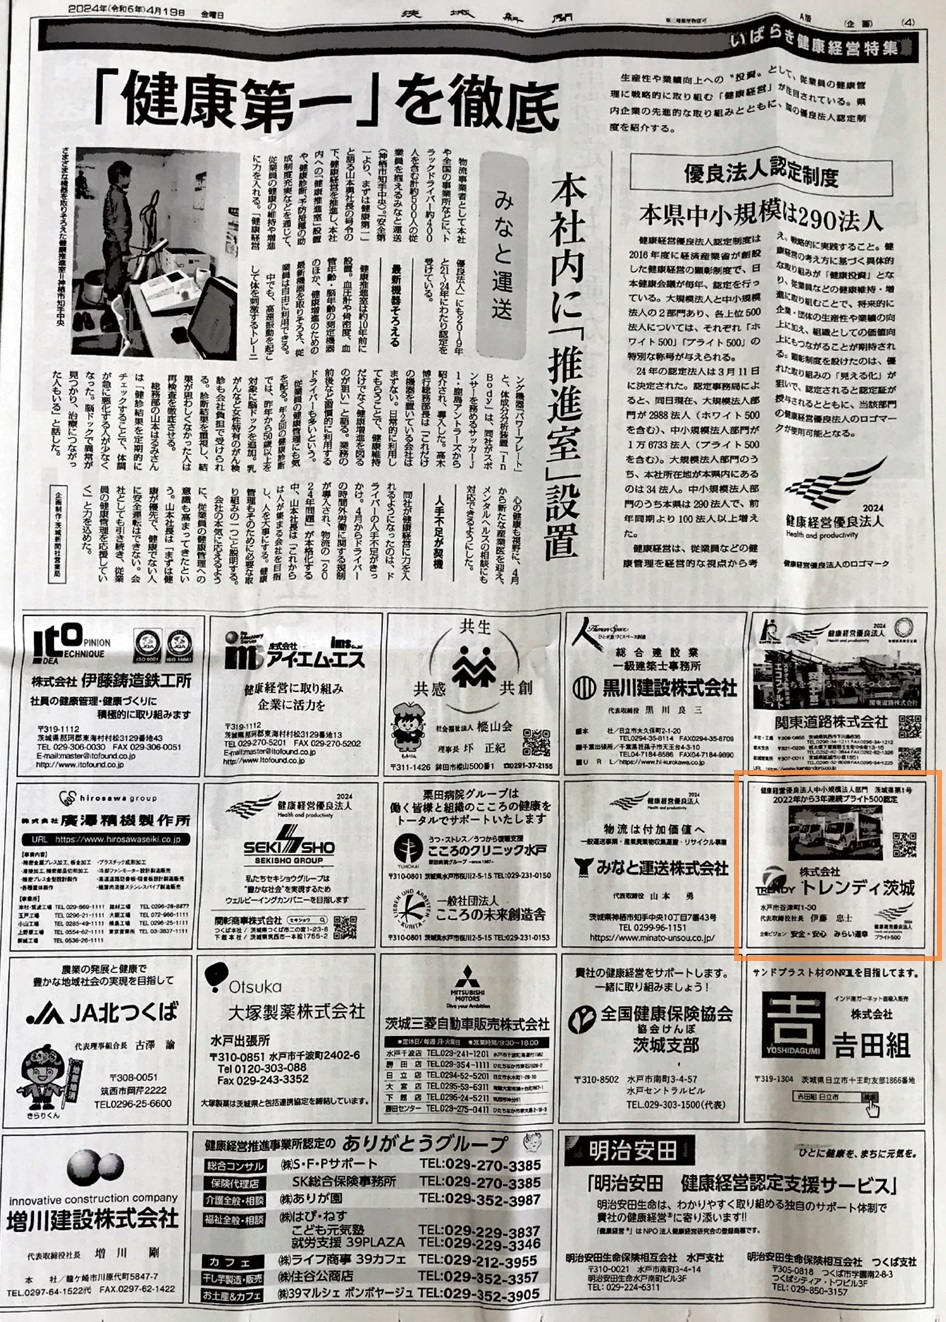 4/19付　茨城新聞【いばらき健康経営特集】広告掲載